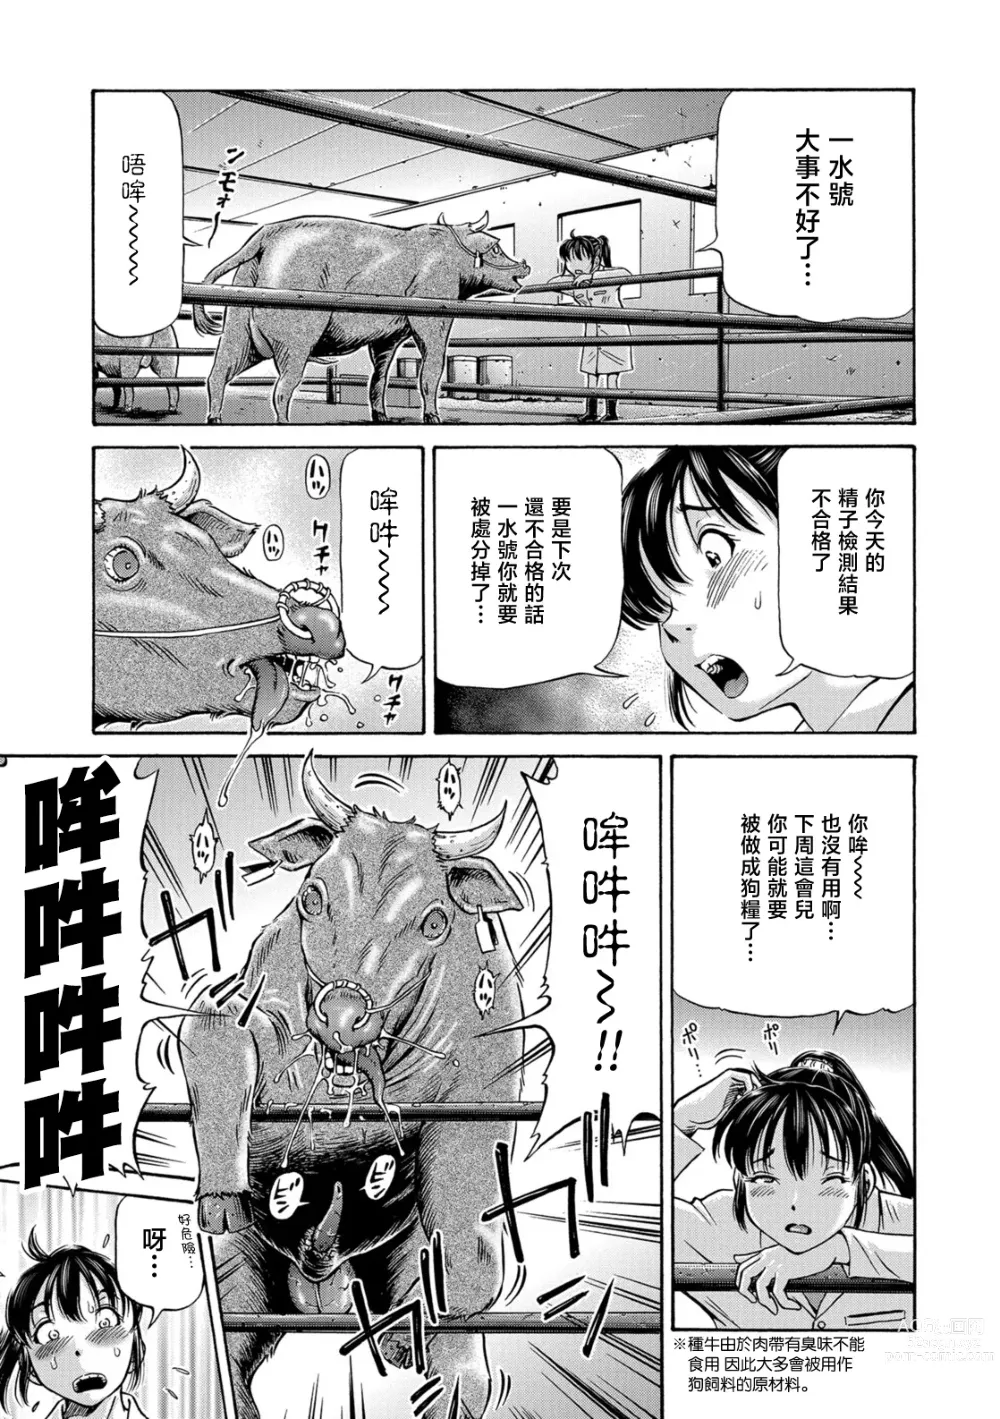 Page 7 of manga Usi no Hitotsuki